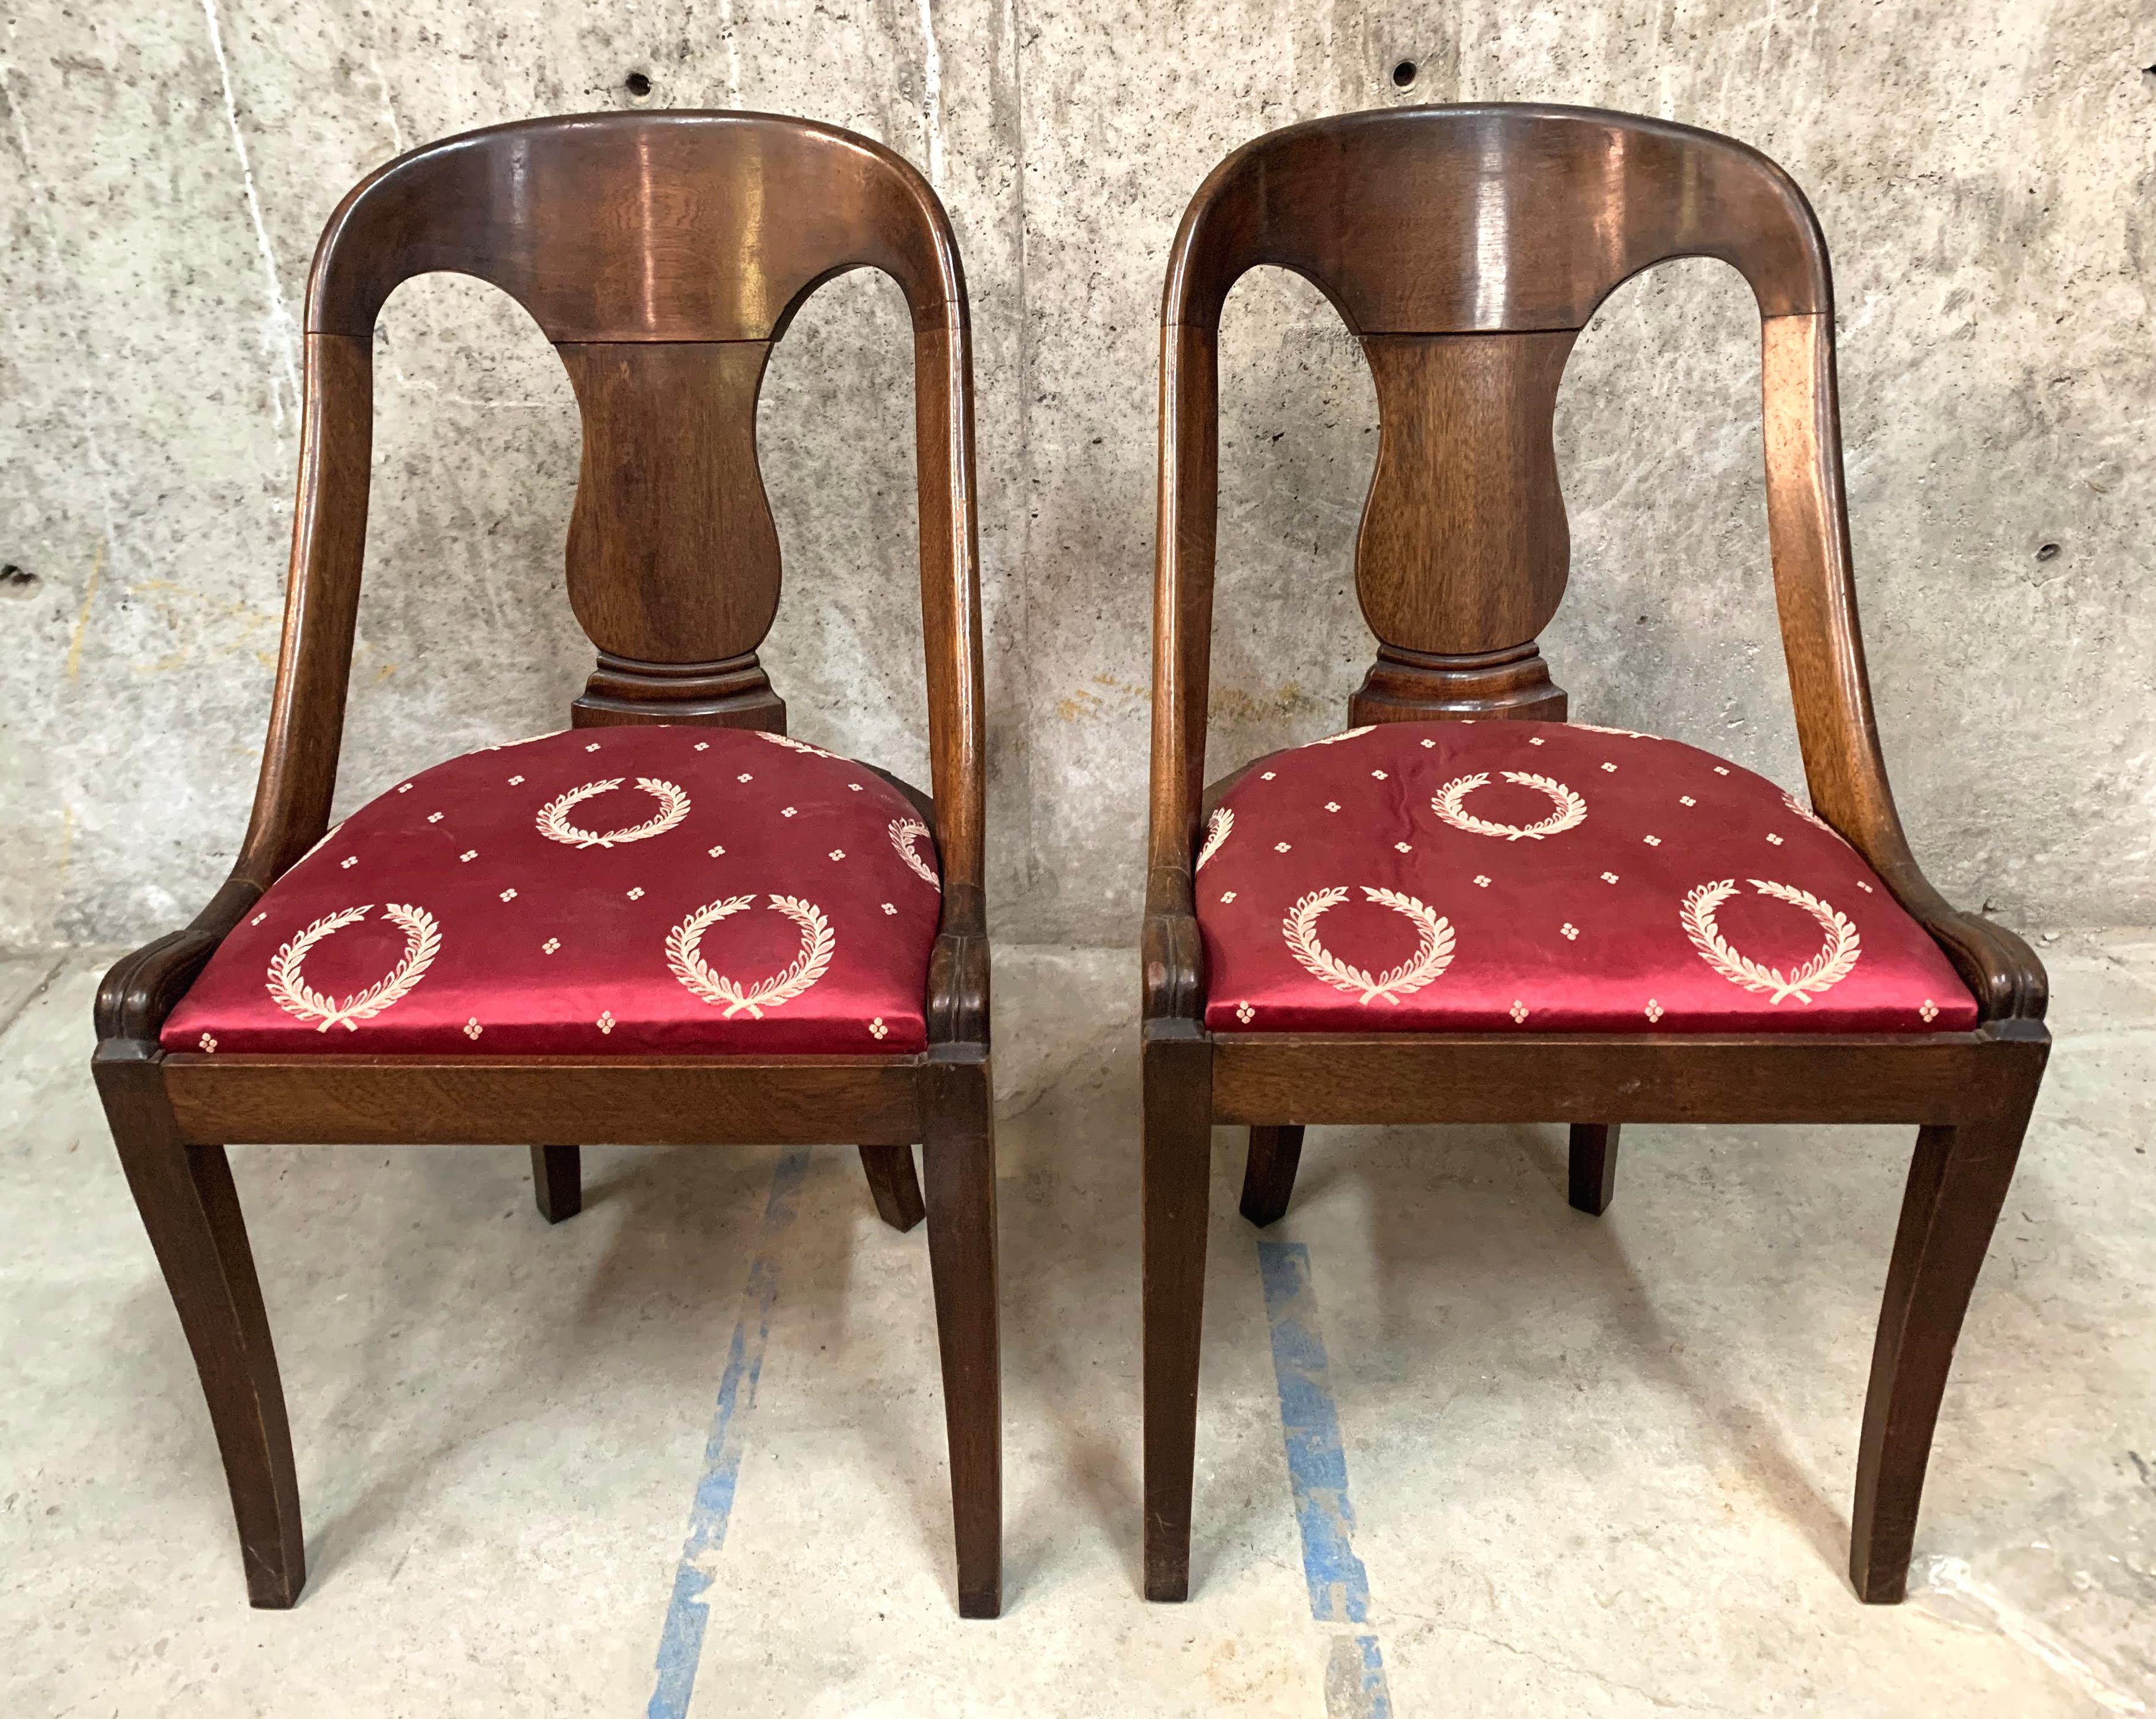 Extraordinaire paire de chaises en acajou de style Empire français présentant une structure en forme de baignoire ou de gondole. Décoré de façon minimale, il présente un dossier incurvé, un dosseret vasif surmonté d'une barre d'appui incurvée. Les